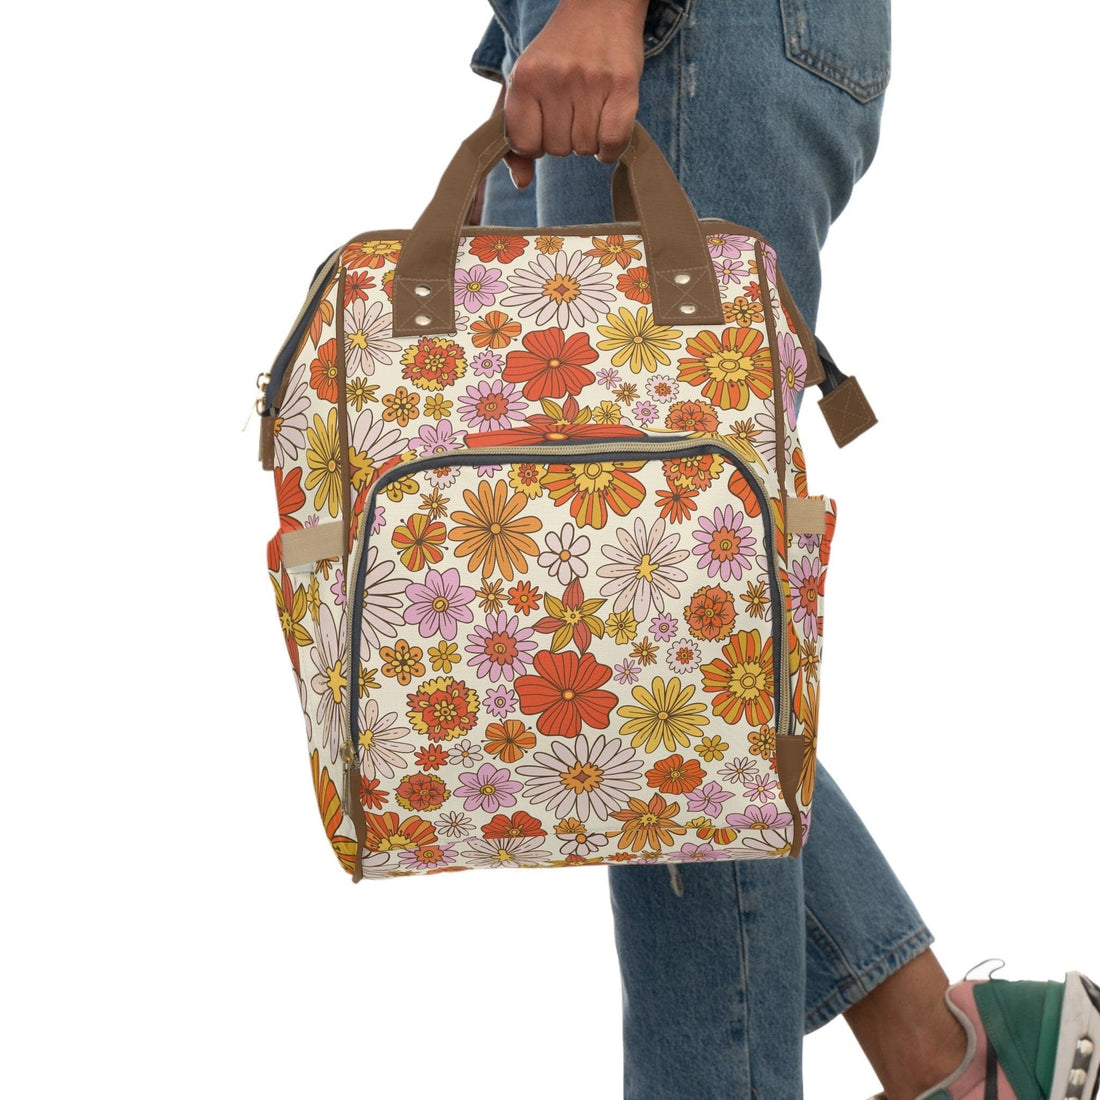 Kate McEnroe New York Retro 70s Groovy Hippie Flower Power Multifunctional Diaper Backpack, MCM Weekender Bag, Carry - on Luggage, Multipurpose BackpackDiaper Bags30493279754033541251